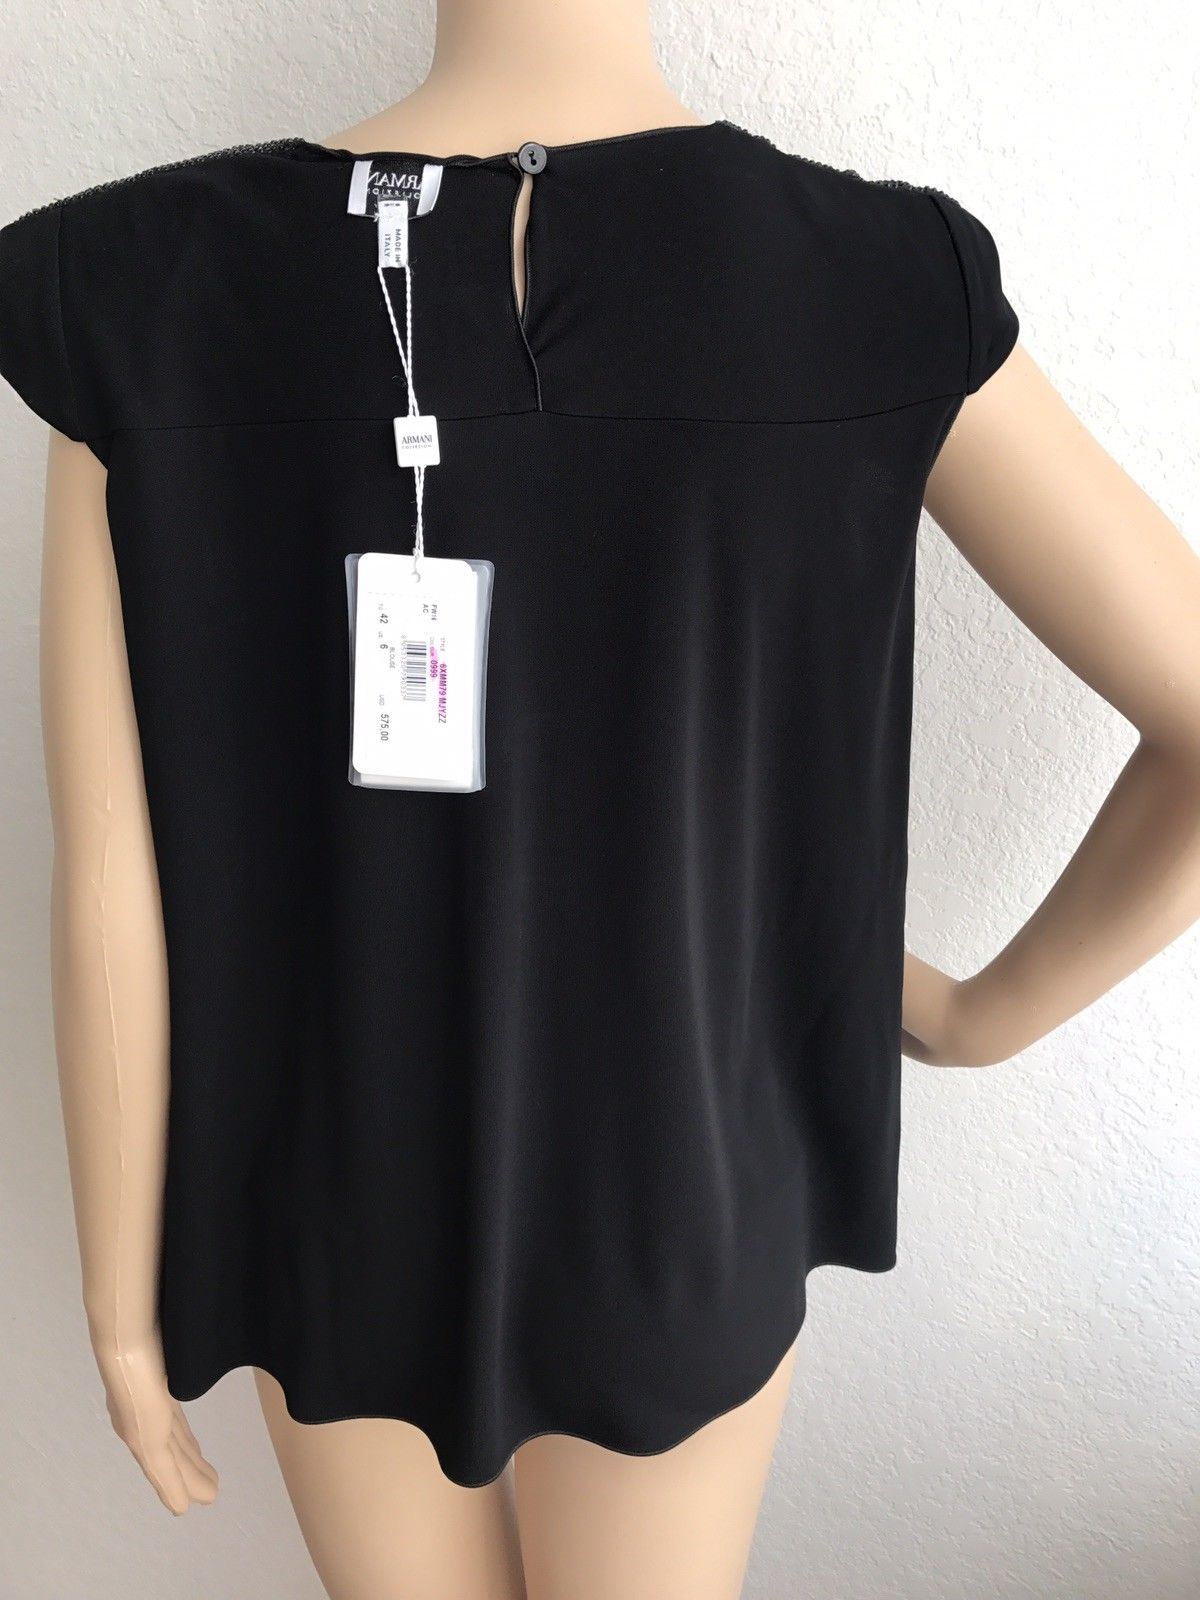 New $575 Armani Collezioni Women’s Black Blouse Size 6 (42 Euro) Made In Italy